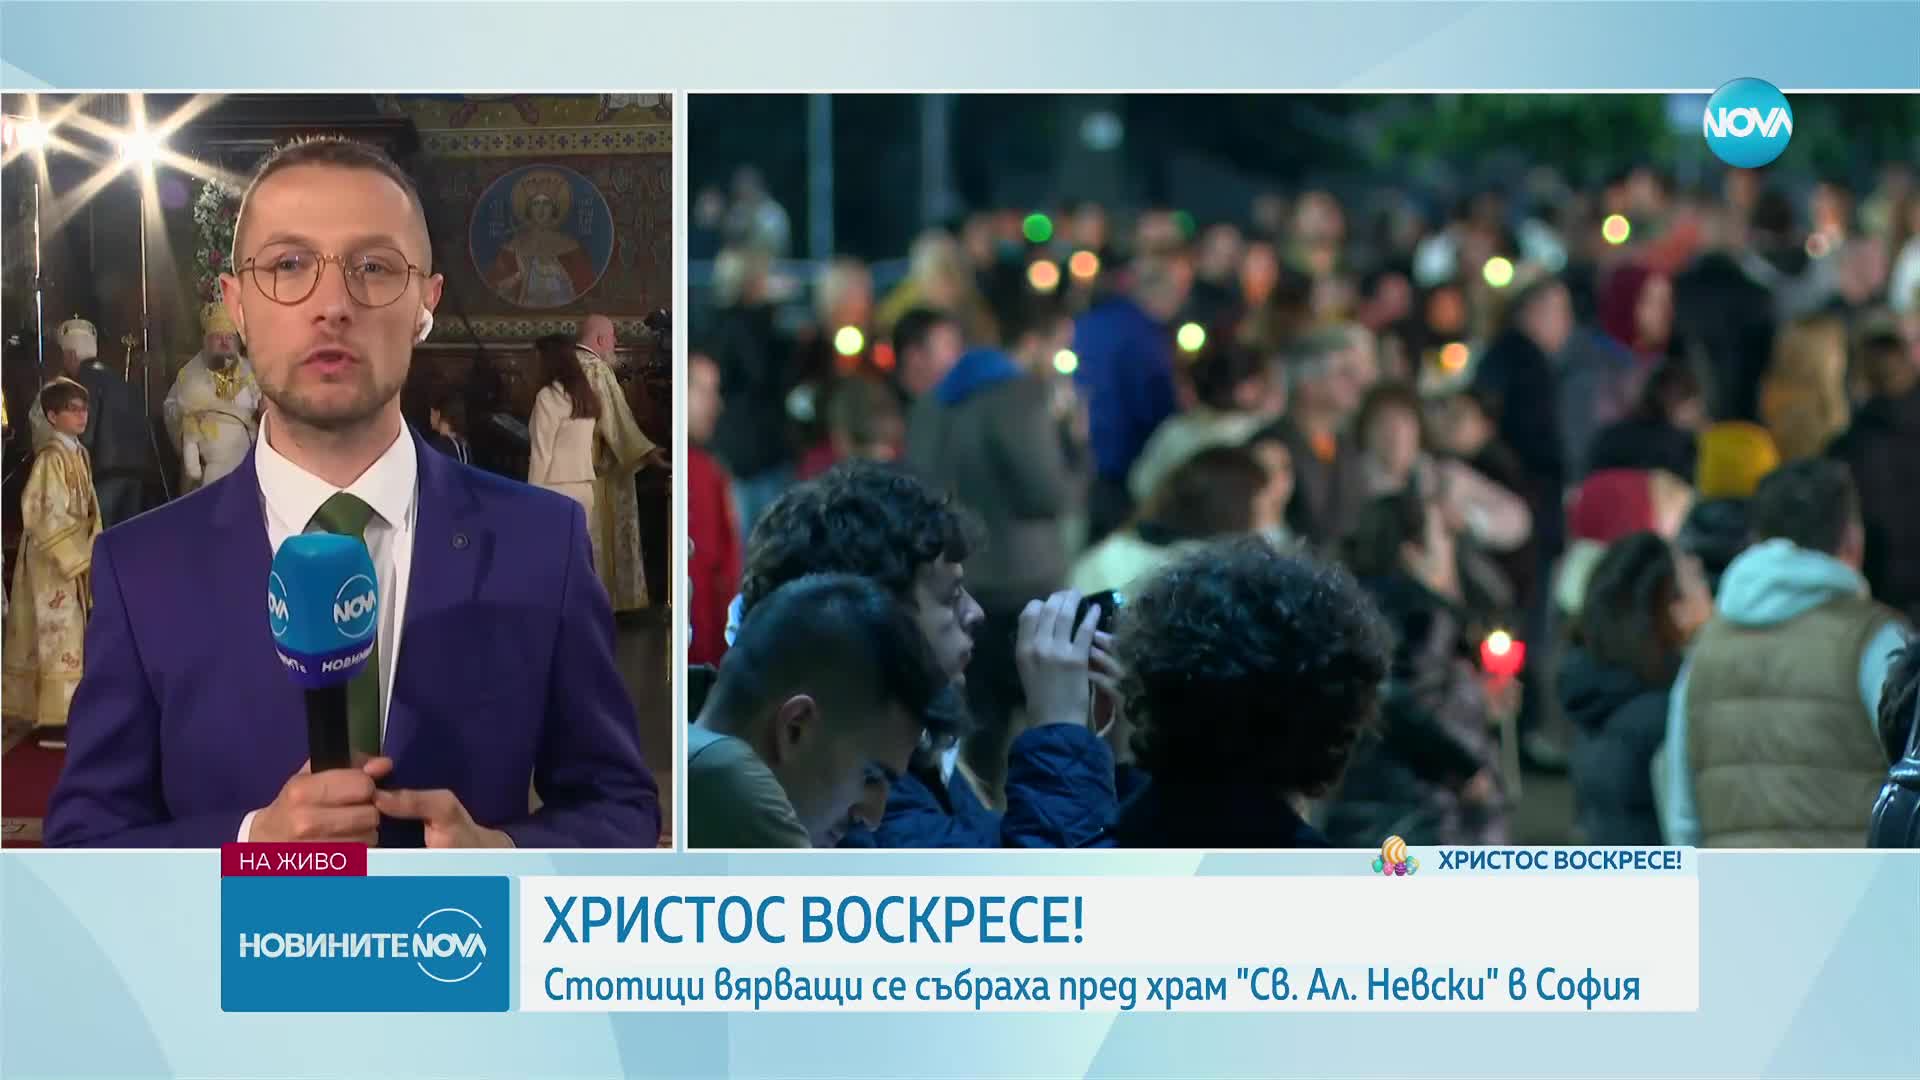 Стотици вярващи се събраха пред храм "Св. Александър Невски" в София